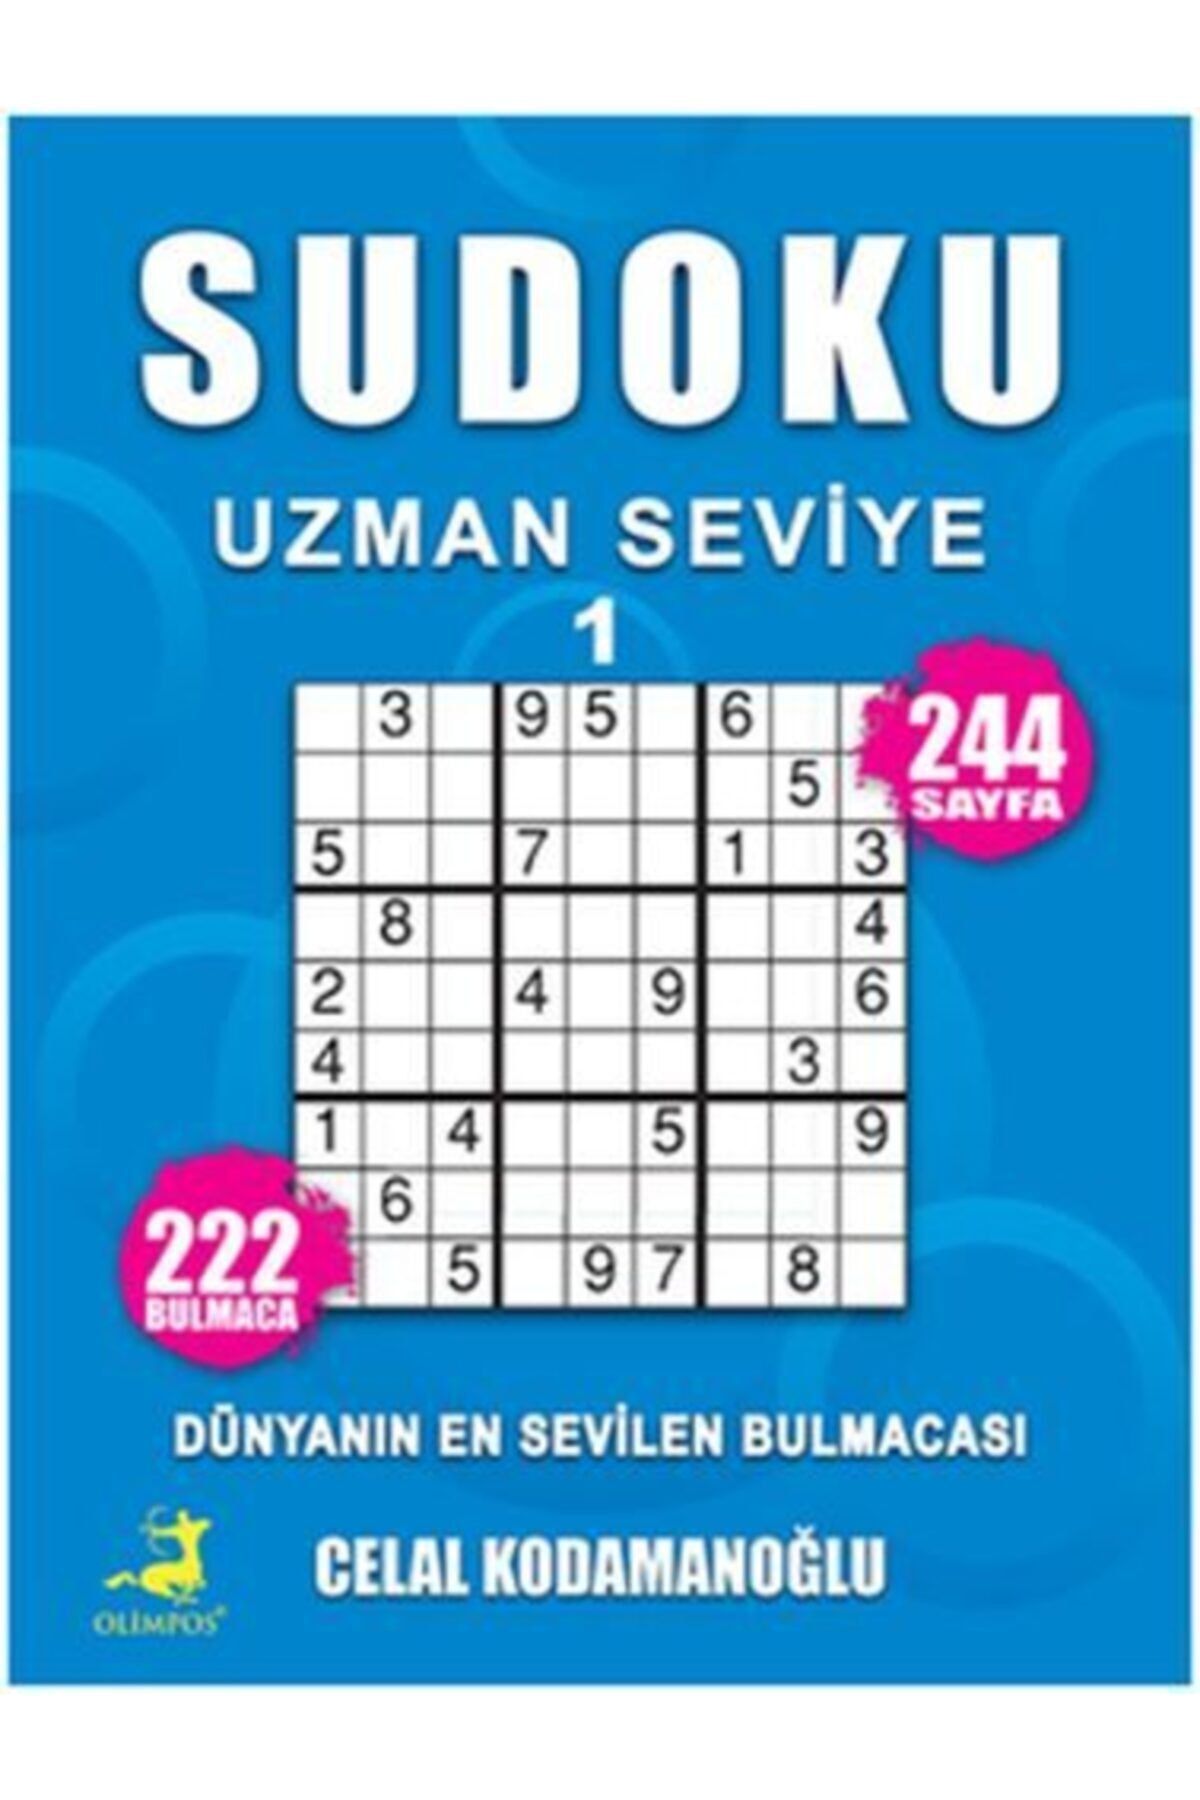 Olimpos Yayınları Sudoku Uzman Seviye 1 - - Celal Kodamanoğlu Kitabı